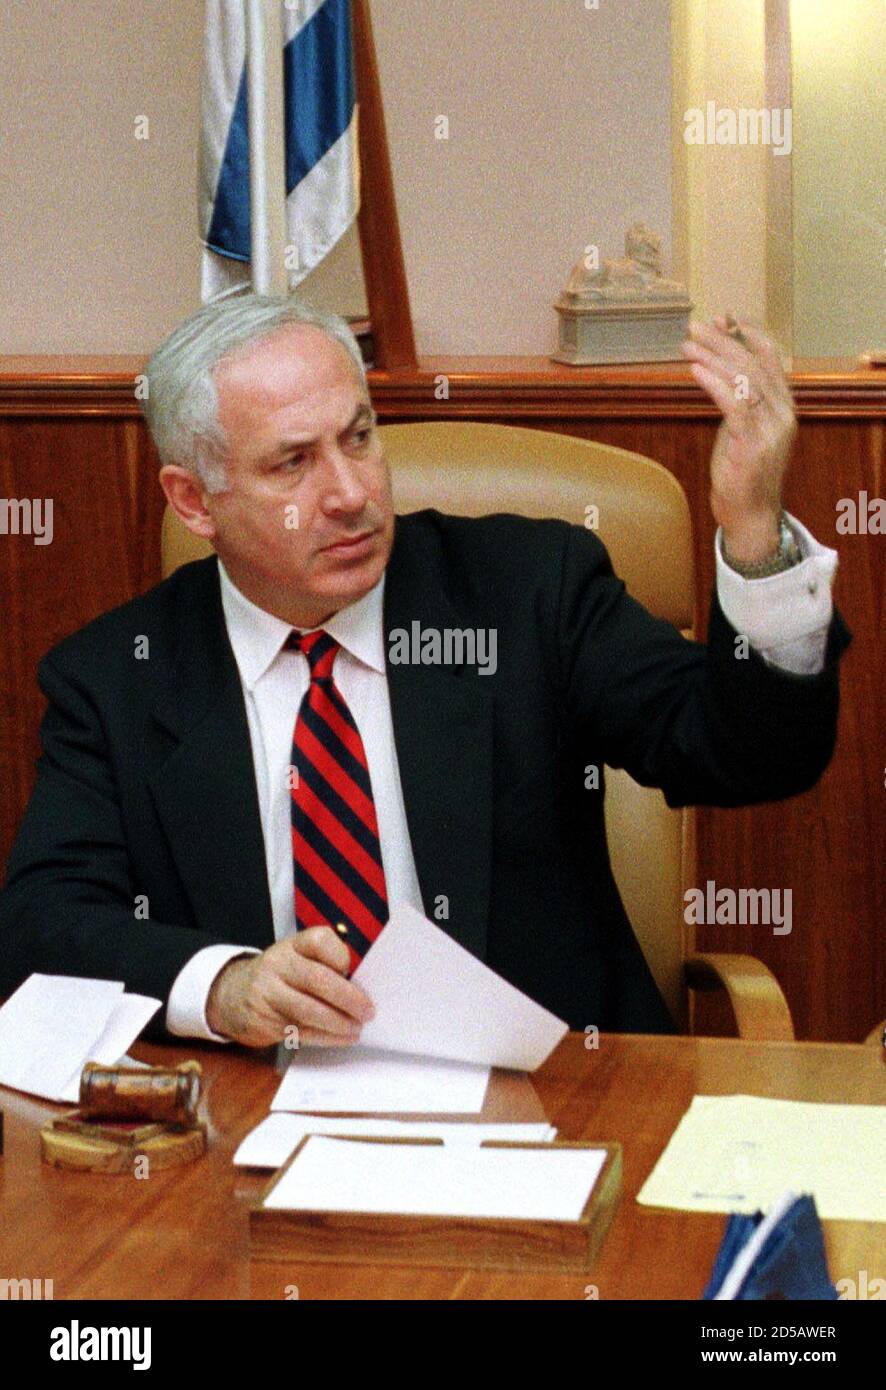 Der israelische Ministerpräsident Benjamin Netanjahu hebt die Hand, als die Kabinettssitzung am 11. November beginnt, um das von Israel und den Palästinensern am 23. Oktober in Washington unterzeichnete Wye-Friedensabkommen zu ratifizieren. Politische Quellen sagten, dass die israelischen Kabinettsminister wahrscheinlich das Abkommen billigen würden, aber eine Reihe von Bedingungen an seine Ratifizierung anhängen würden. JWH/ME Stockfoto